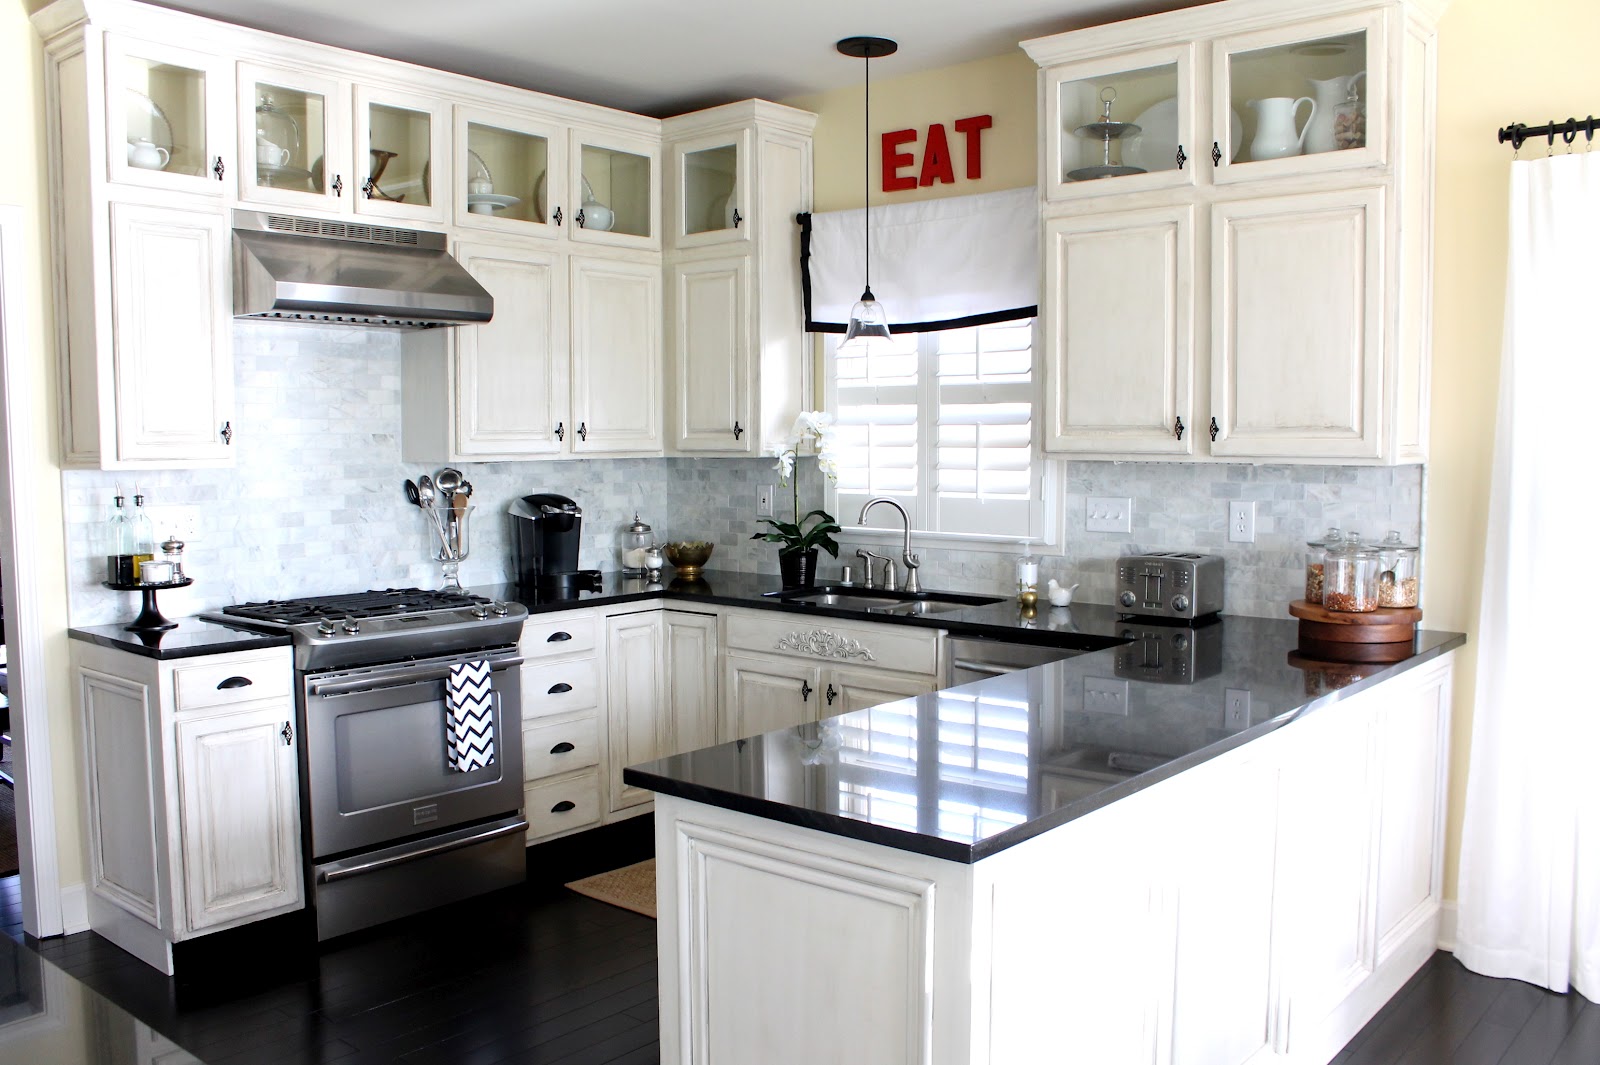 gorgeous-black-and-white-kitchen-decor-ideas-interior-design-ideas-in-white-kitchen-design-ideas